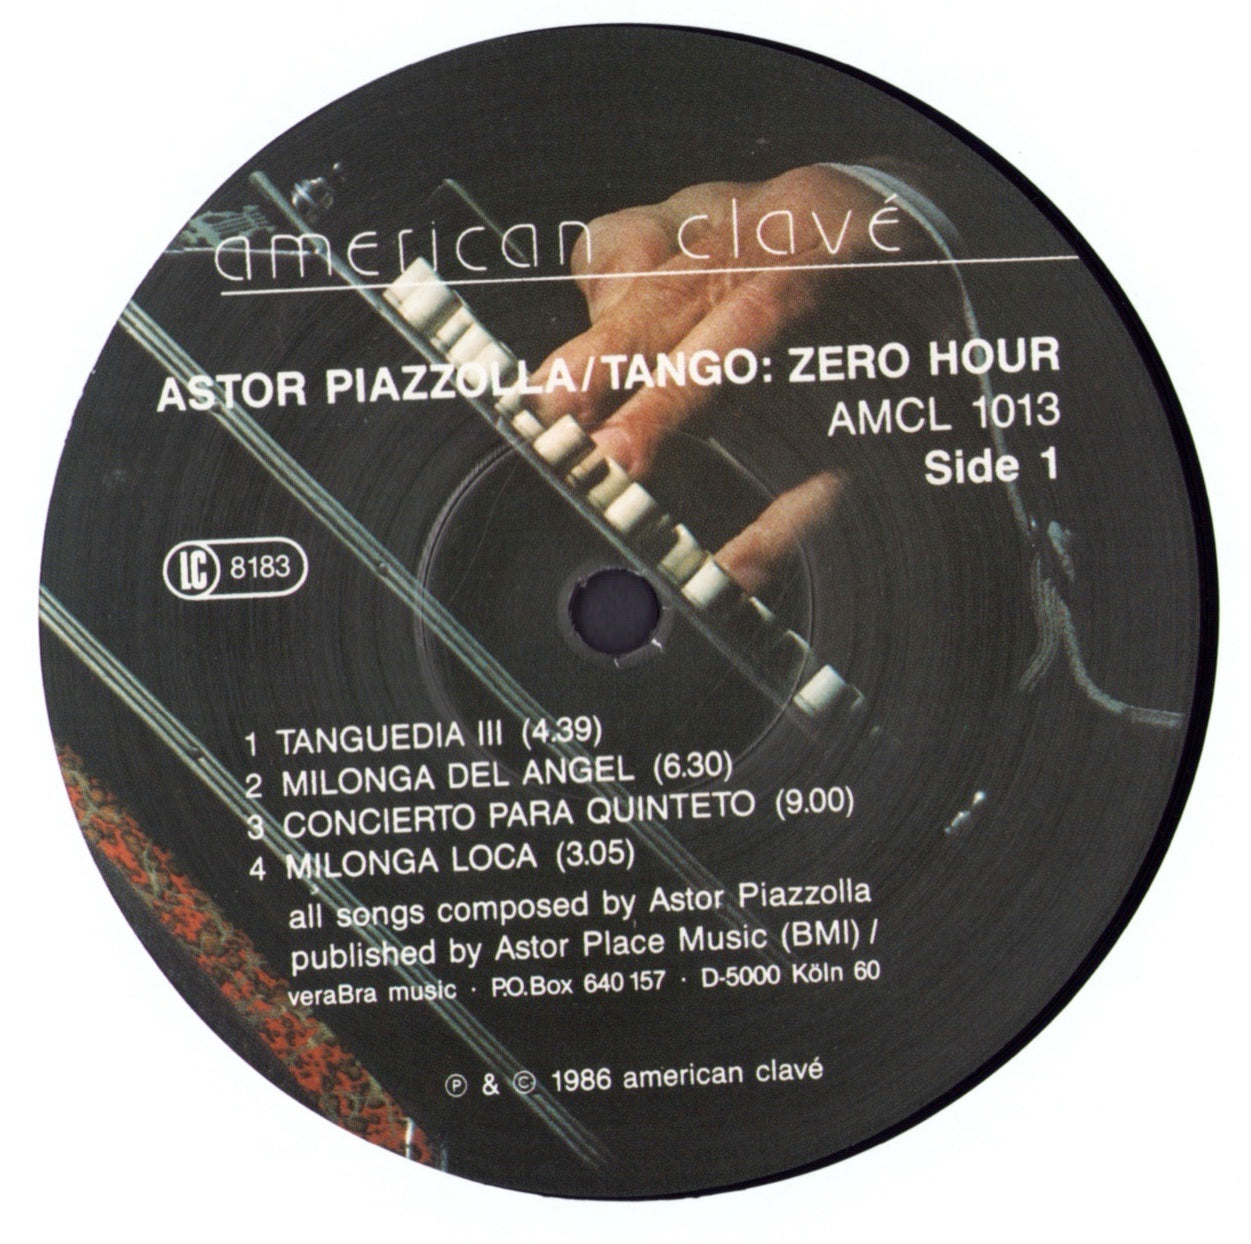 Astor Piazzolla Y Su Quinteto Tango Nuevo - Tango: Zero Hour / Nuevo Tango: Hora Zero Vinyl LP